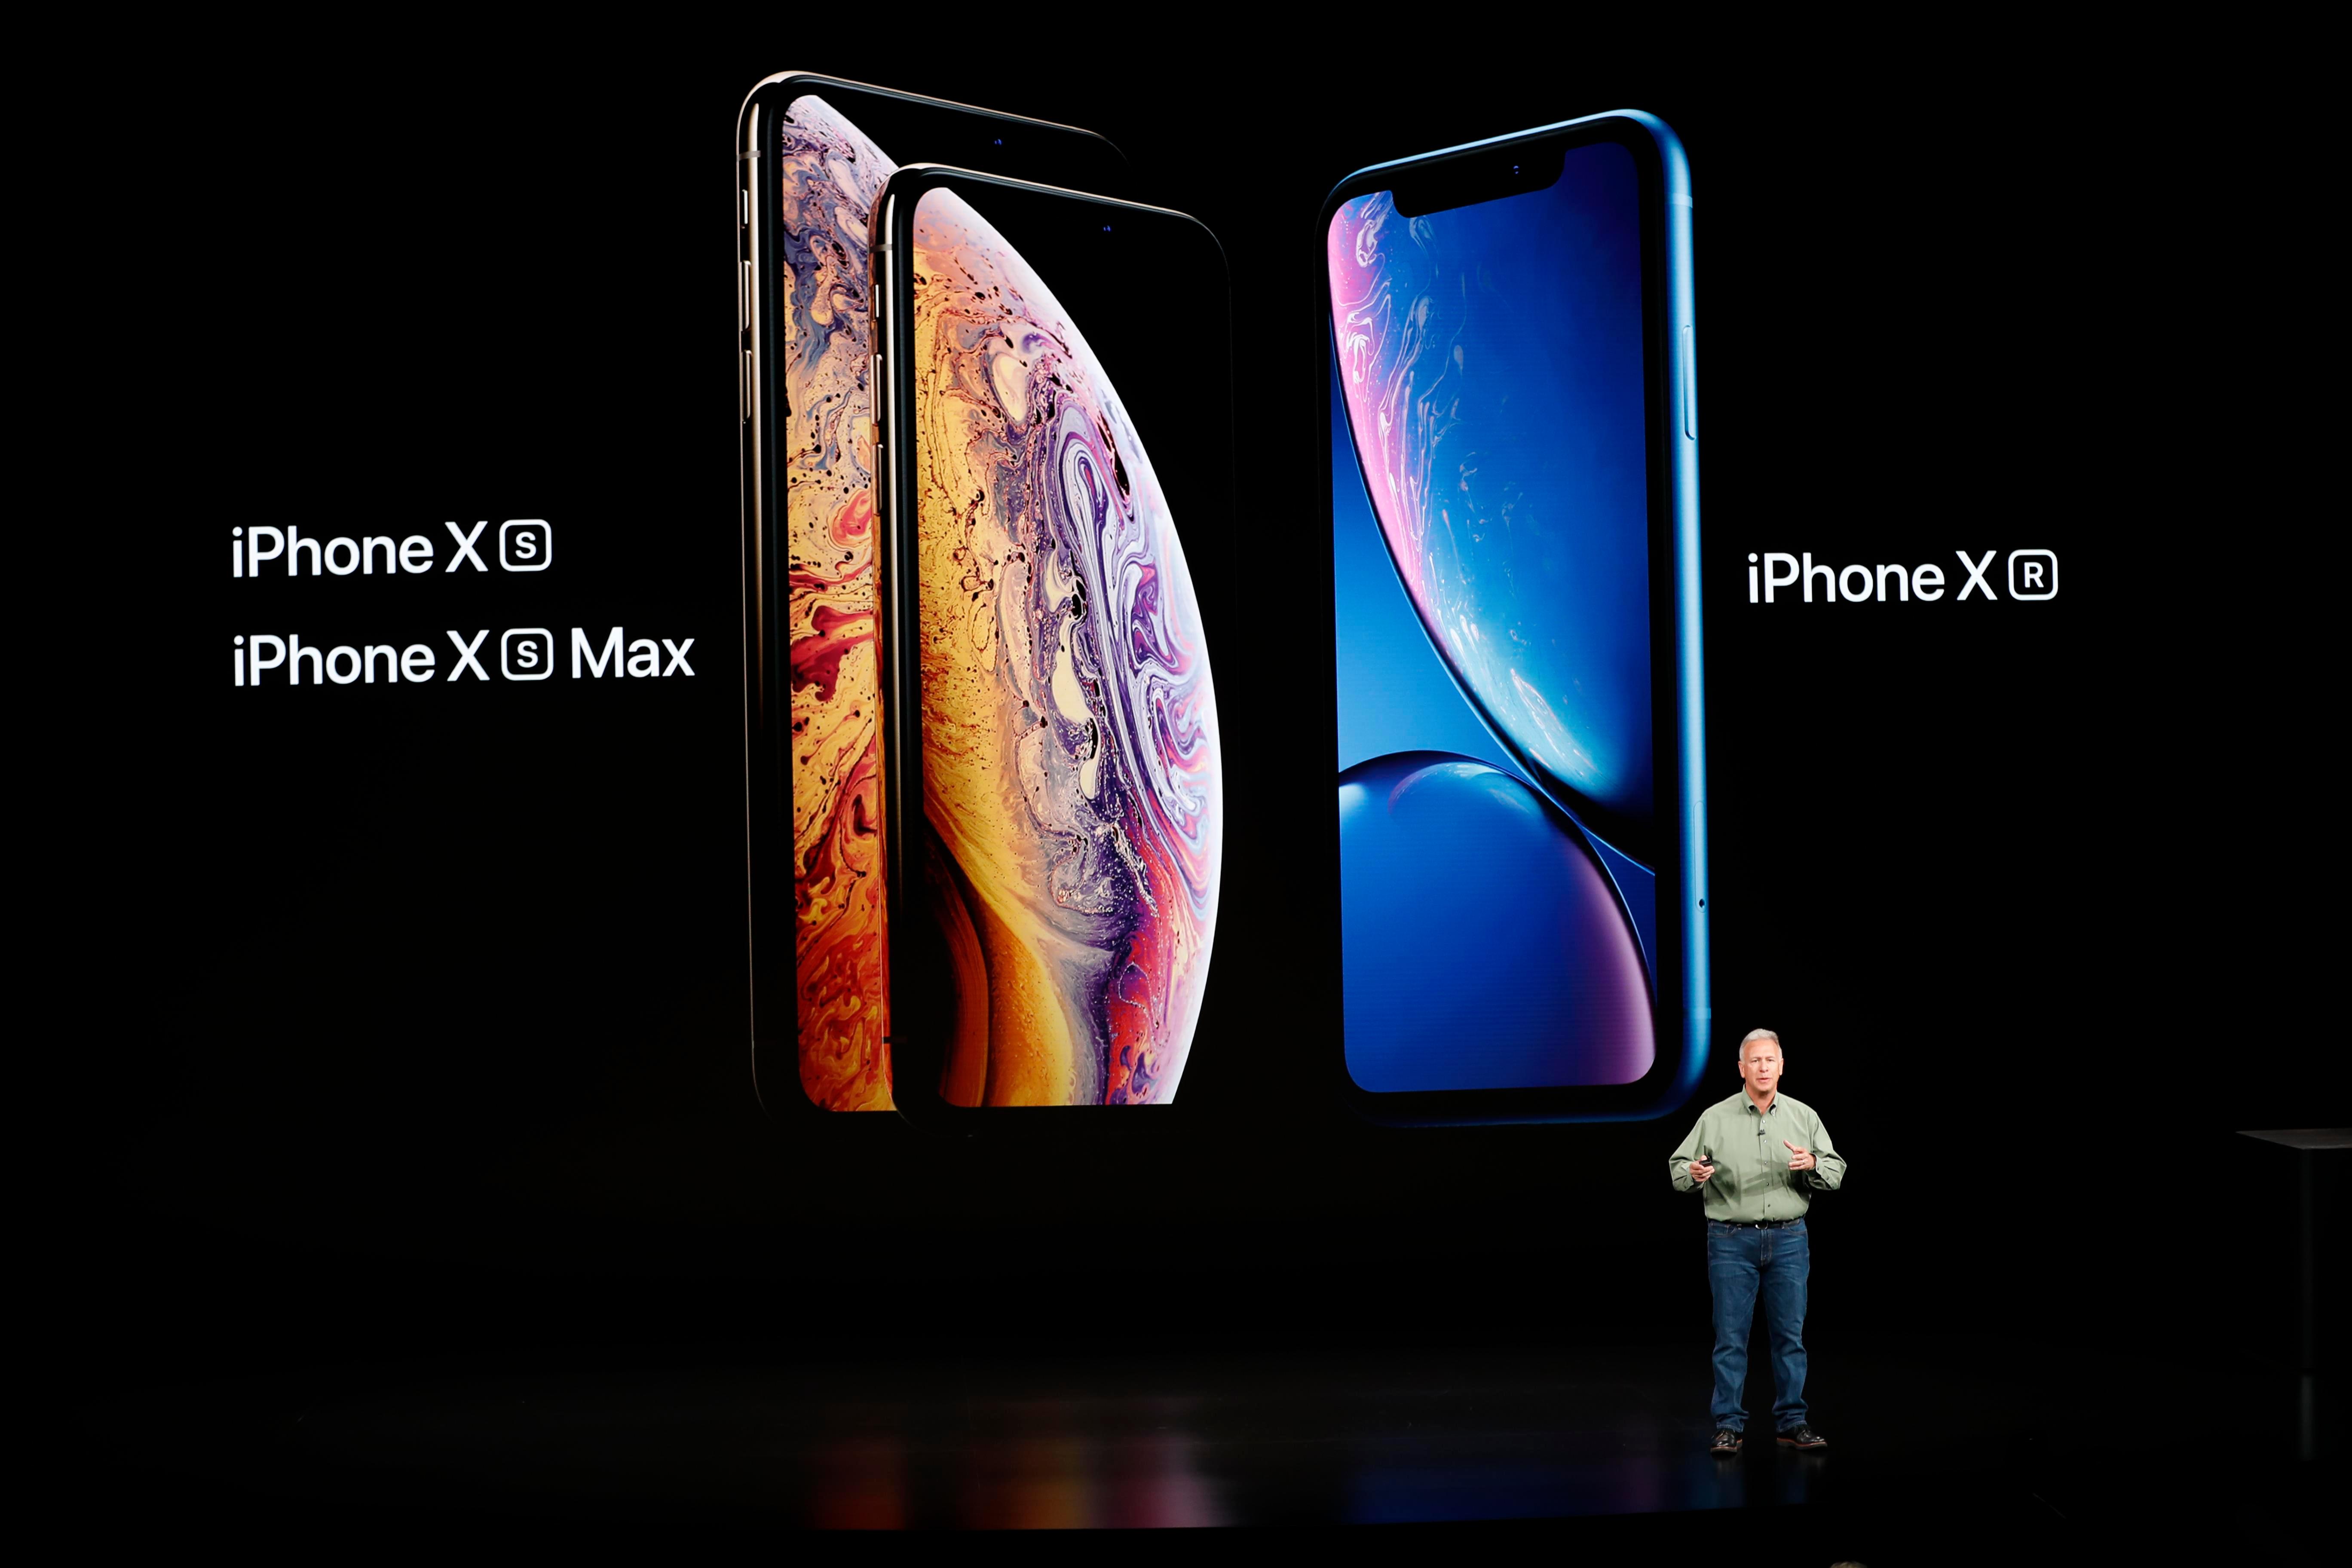         В прошлом году Apple На мероприятиях были представлены три новые модели iPhone